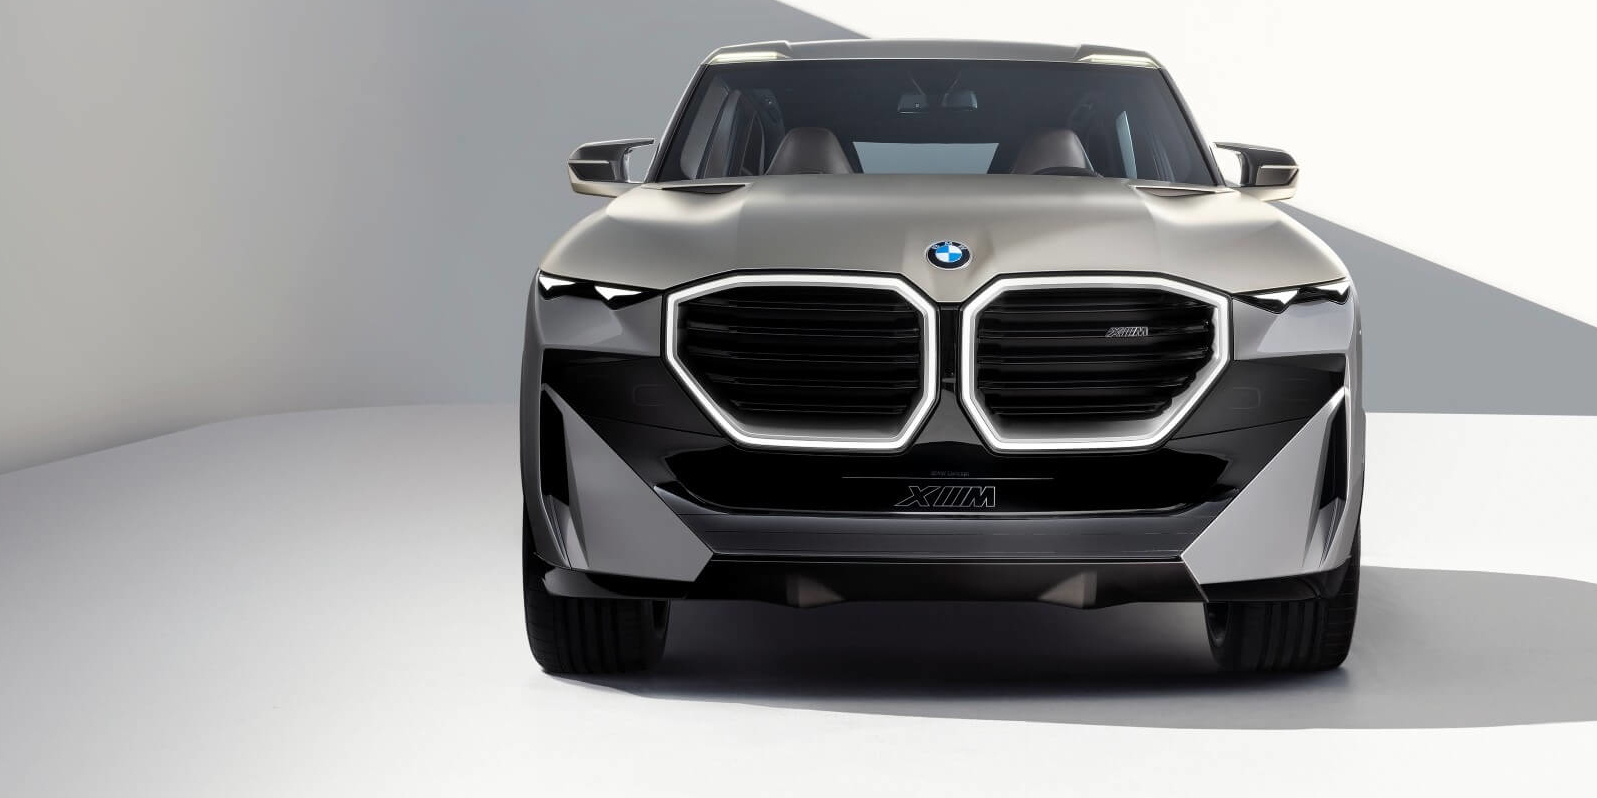 SVETOVNA PREMIERA: BMW je uradno predstavil najbolj nenavaden koncept zadnjega časa – BMW XM!